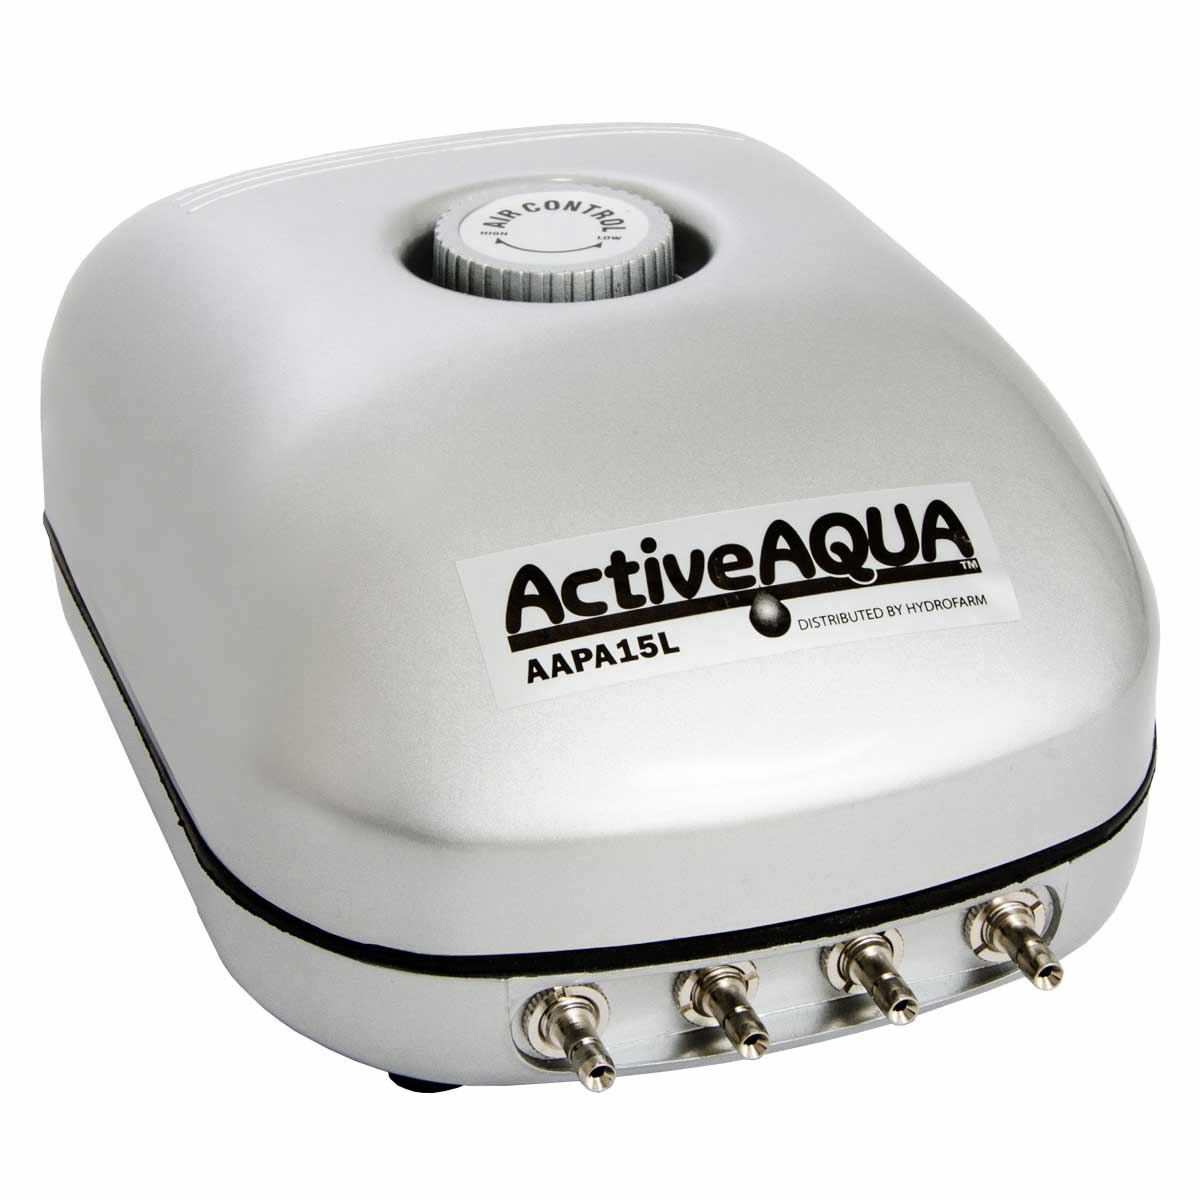 Active Aqua Air Pump with 4 Outlets, 15L Per Minute